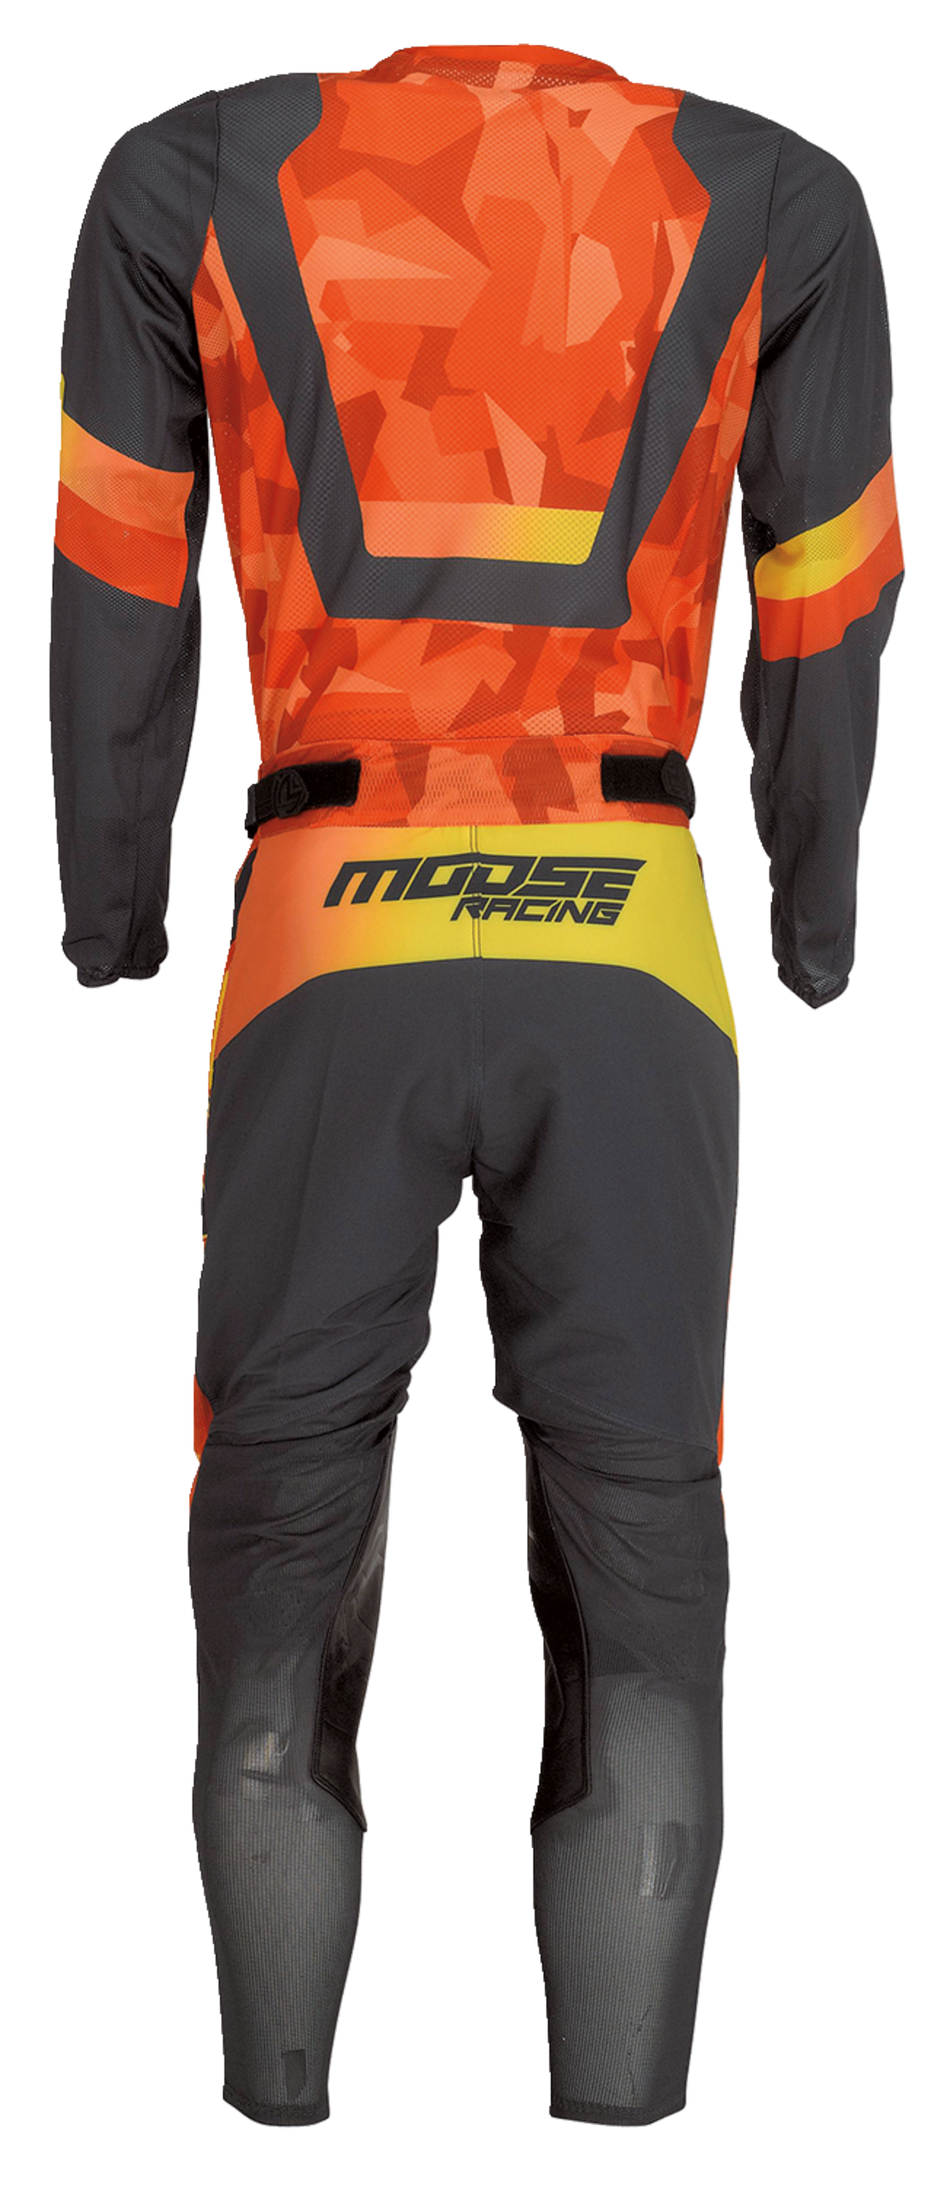 Camiseta MOOSE RACING Sahara™ - Naranja/Negro - 3XL 2910-7227 